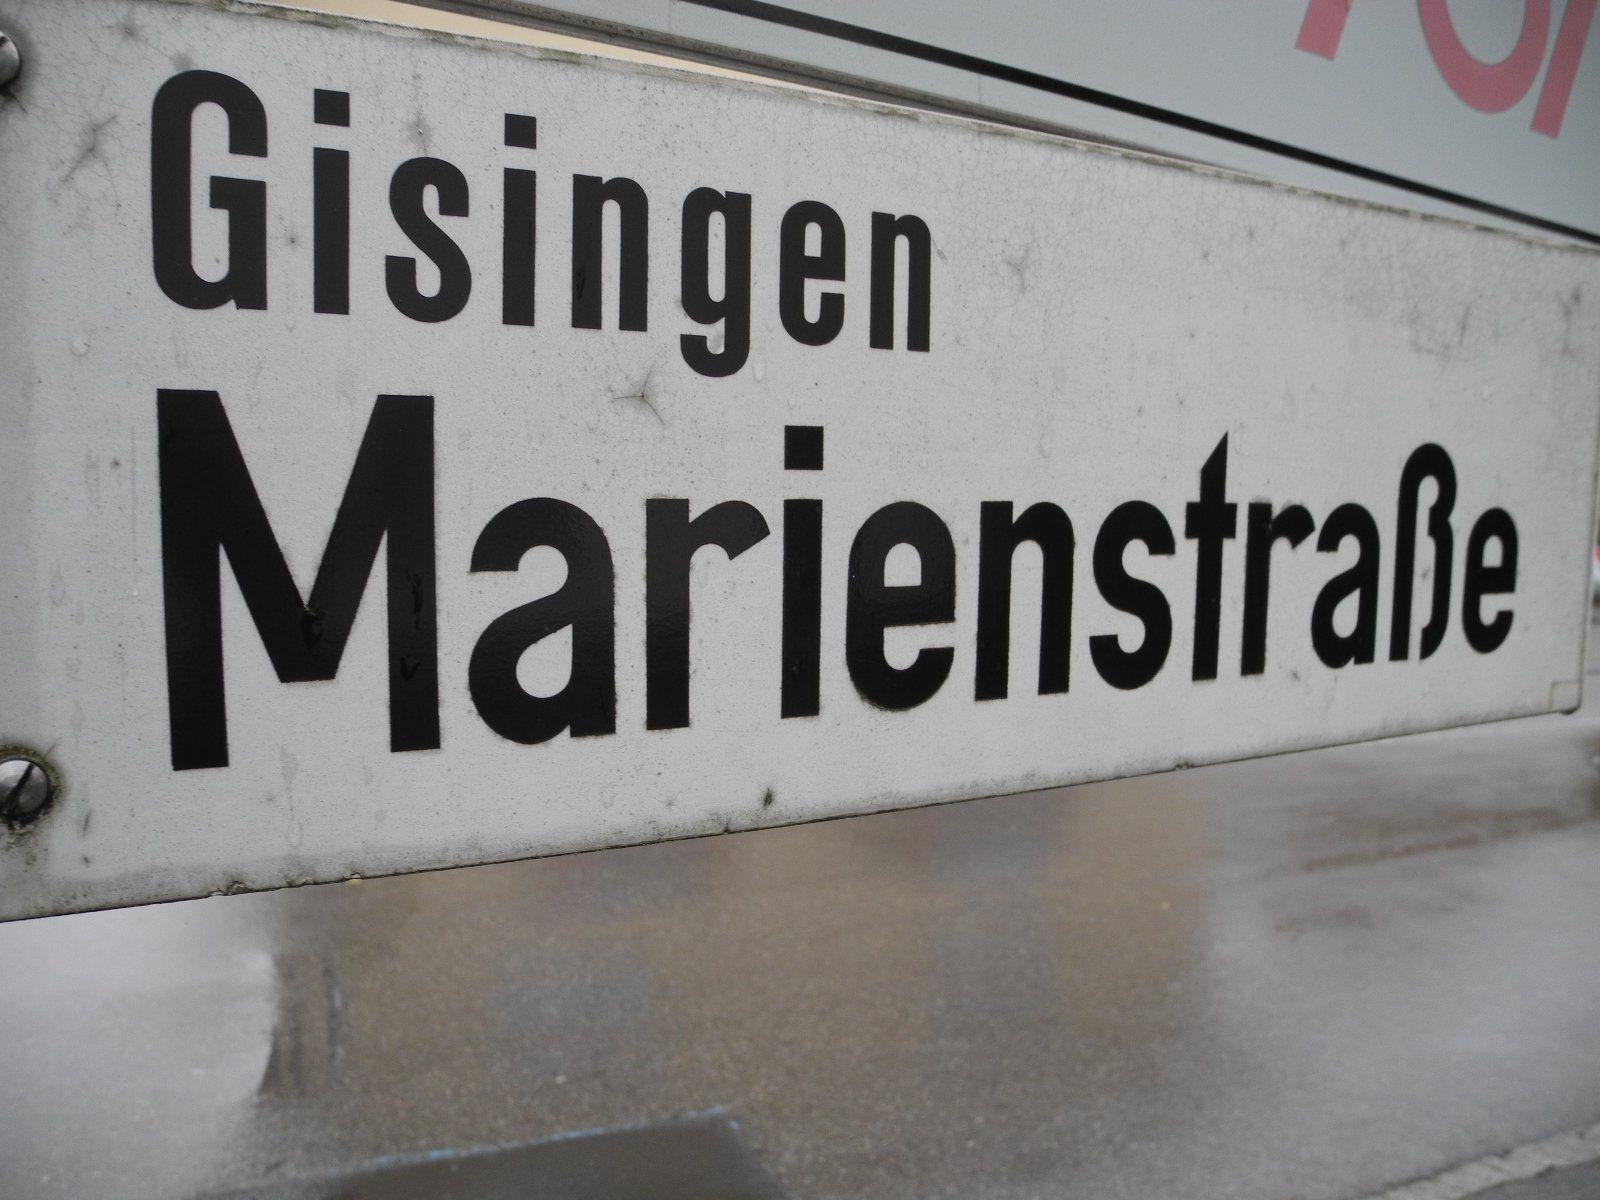 Die Marienstraße hat iren Namen von religiöse Bezeichnung aus vergangenen Tagen.